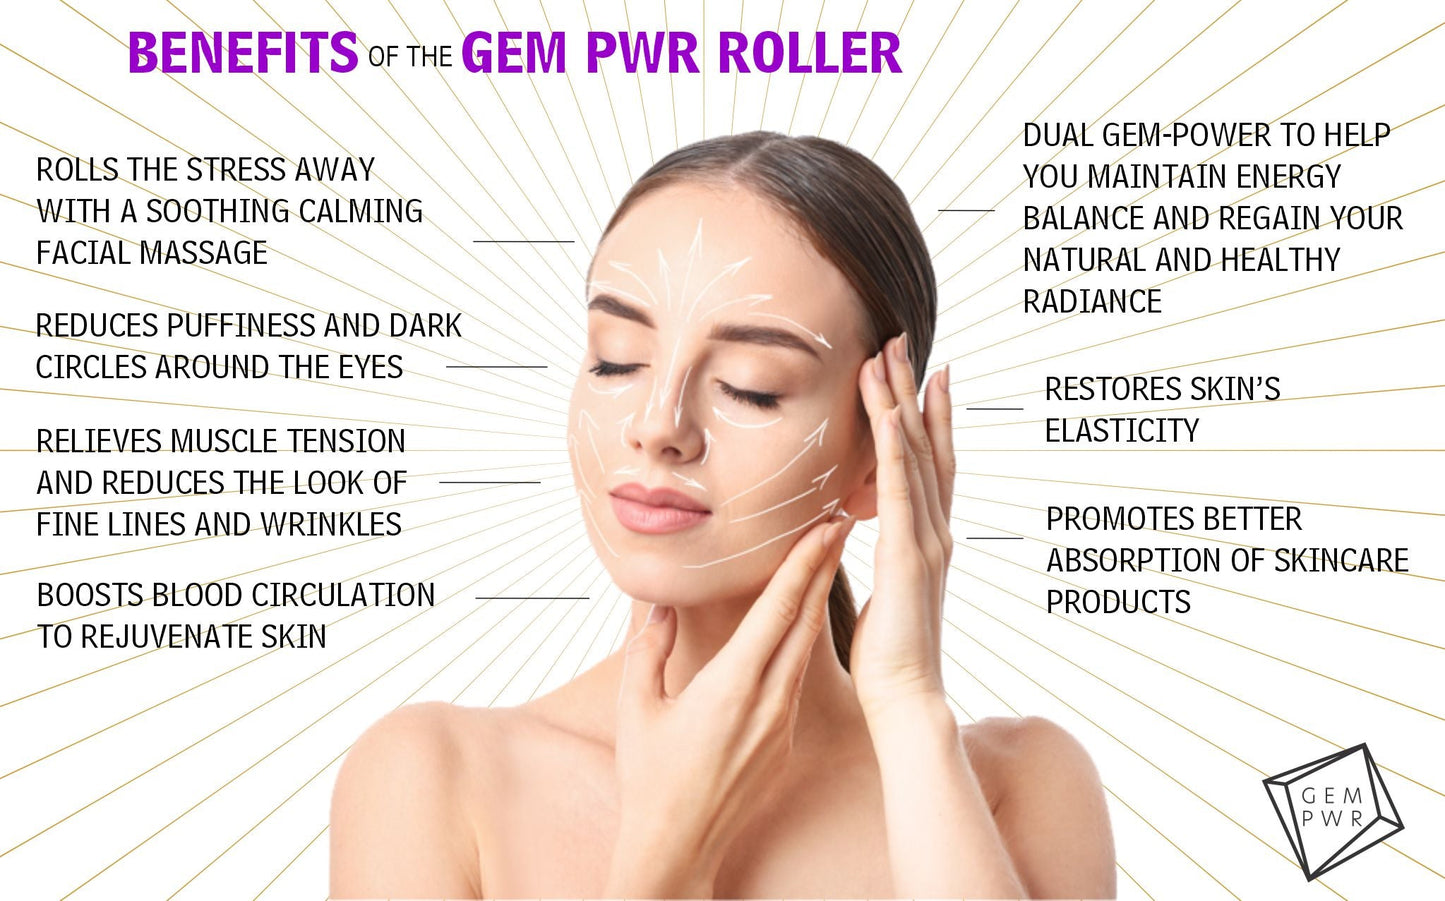 GEM PWR Roller Benefits